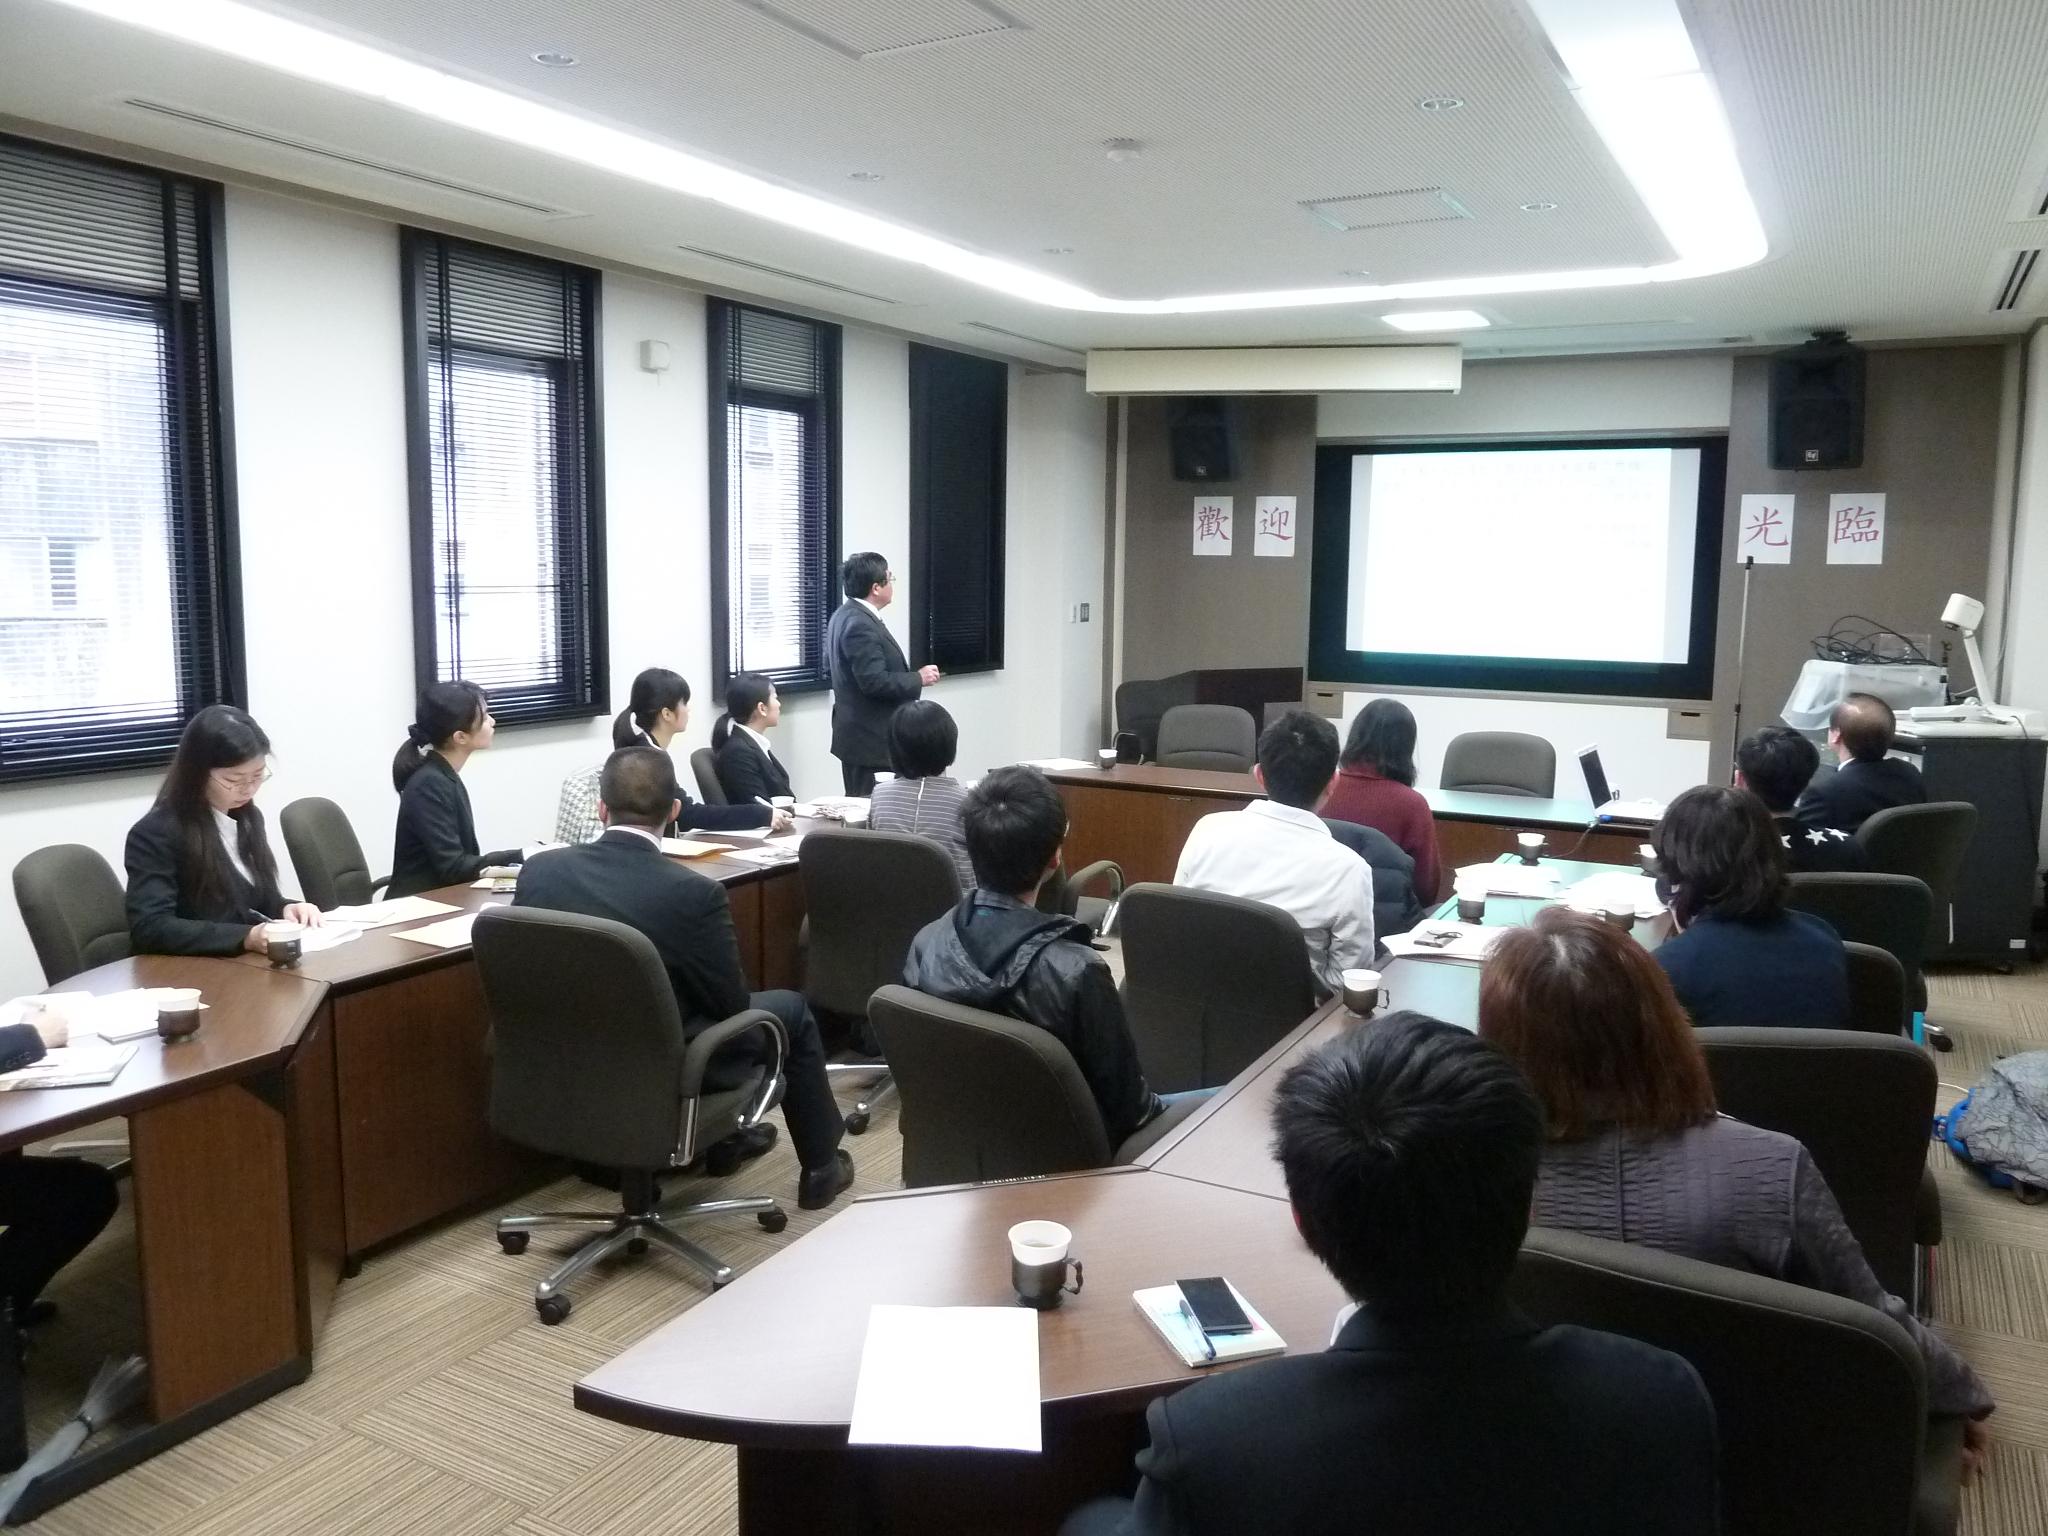 3/9戎総領事が「台湾人が尊敬する日本精神」を題として講演会を行った。当弁事処のお招きにより日本人大学生と台湾留学生達が参加した。